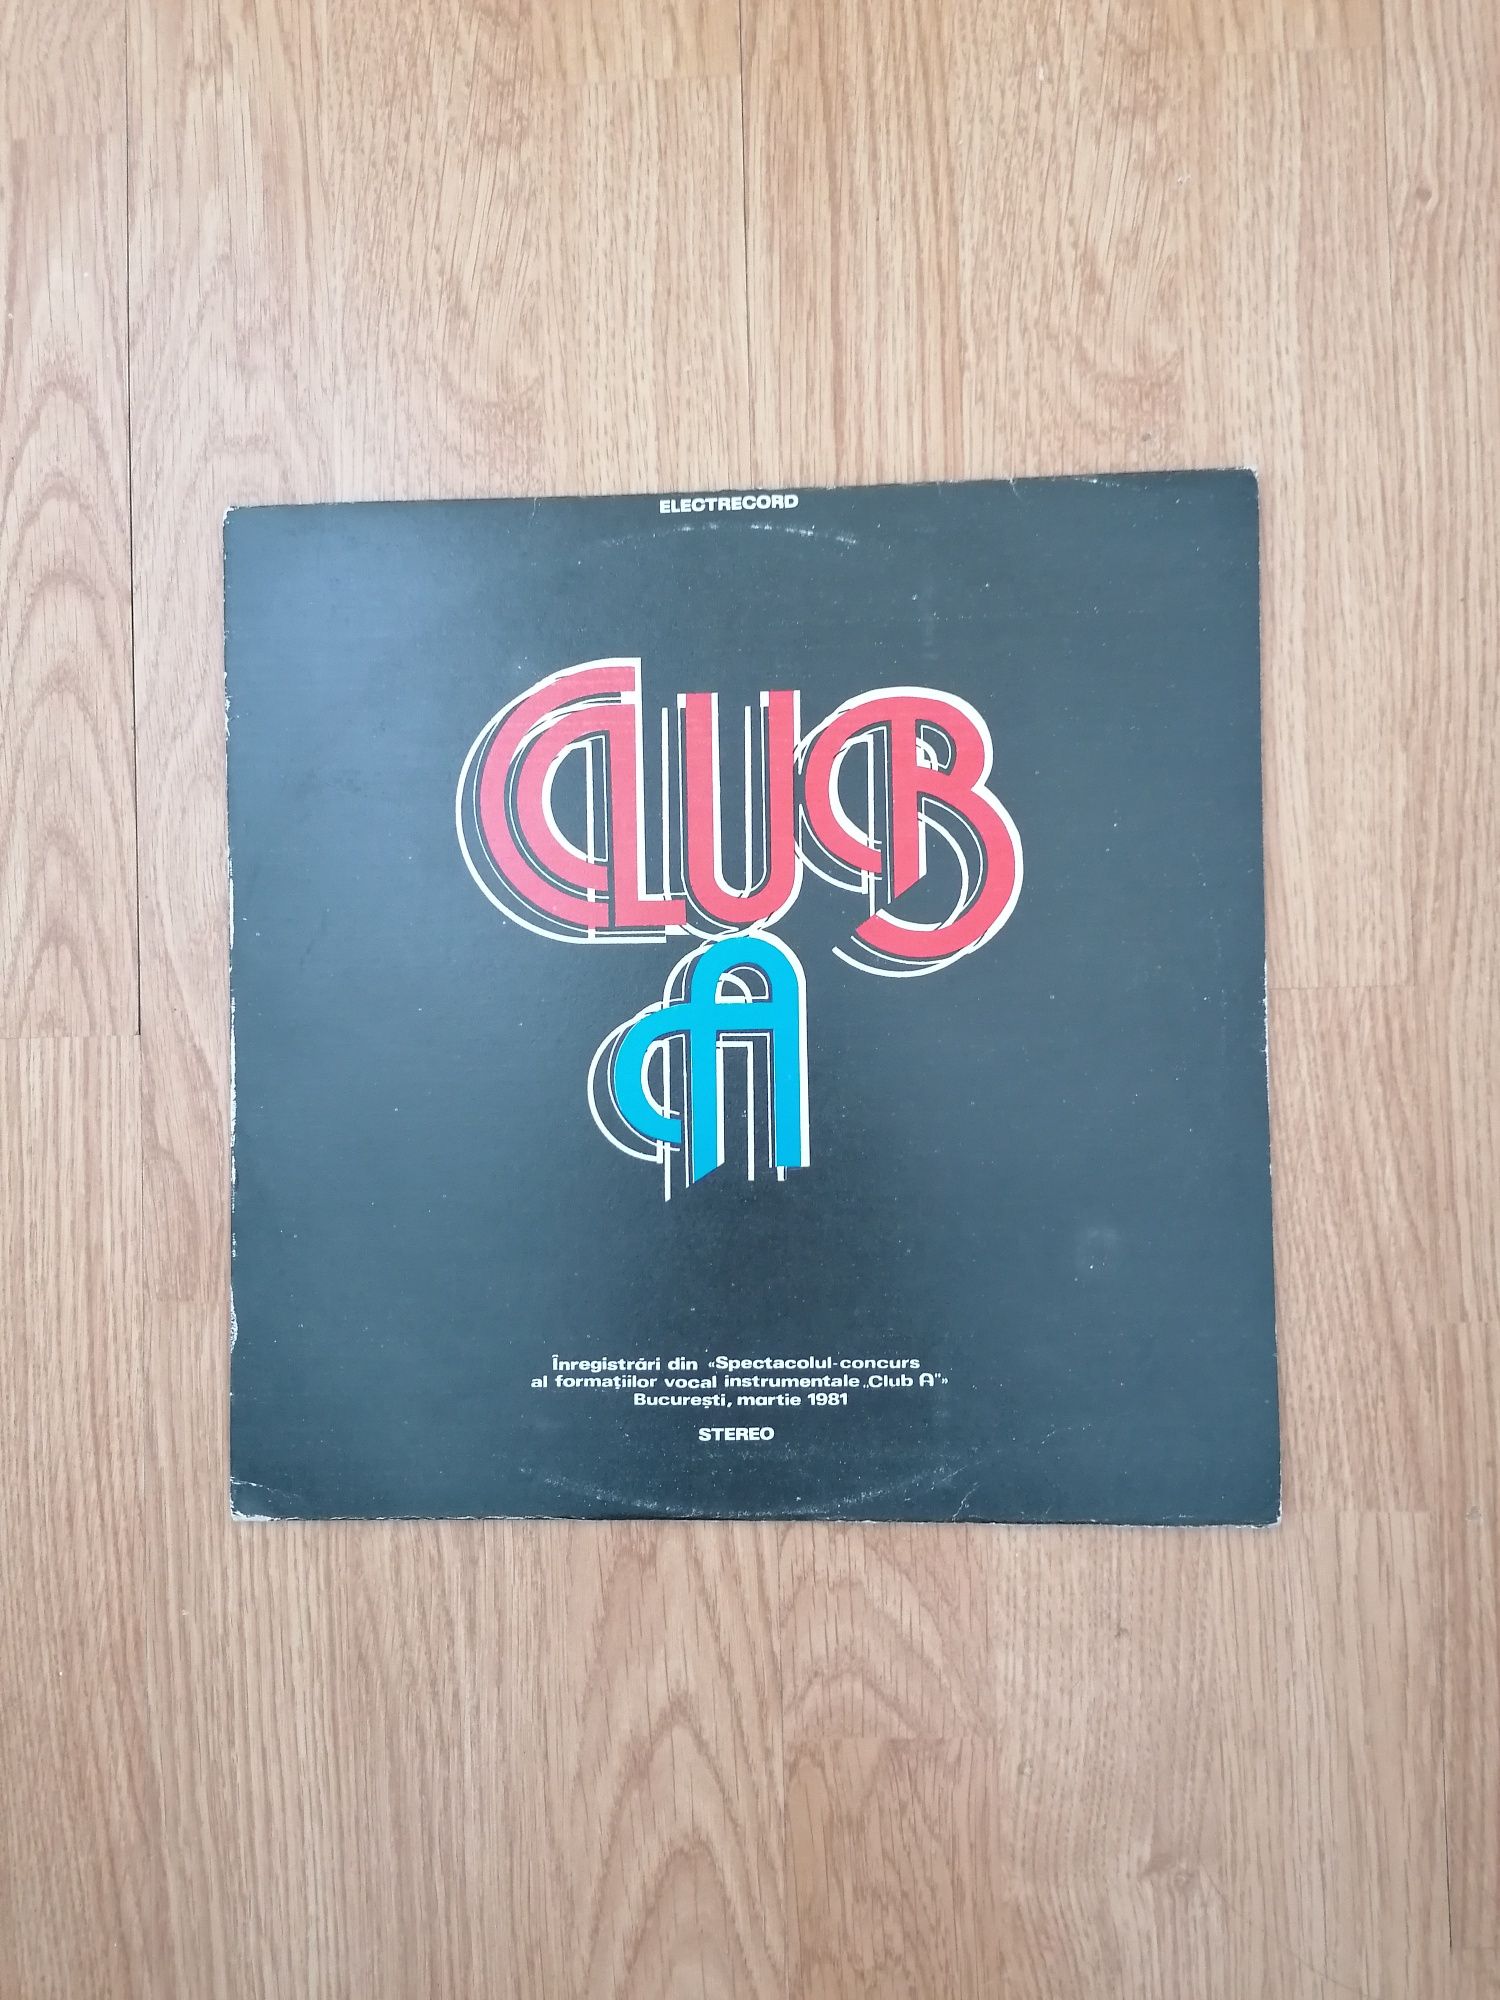 Vinyl Various - Club A, Electrecord, 1981